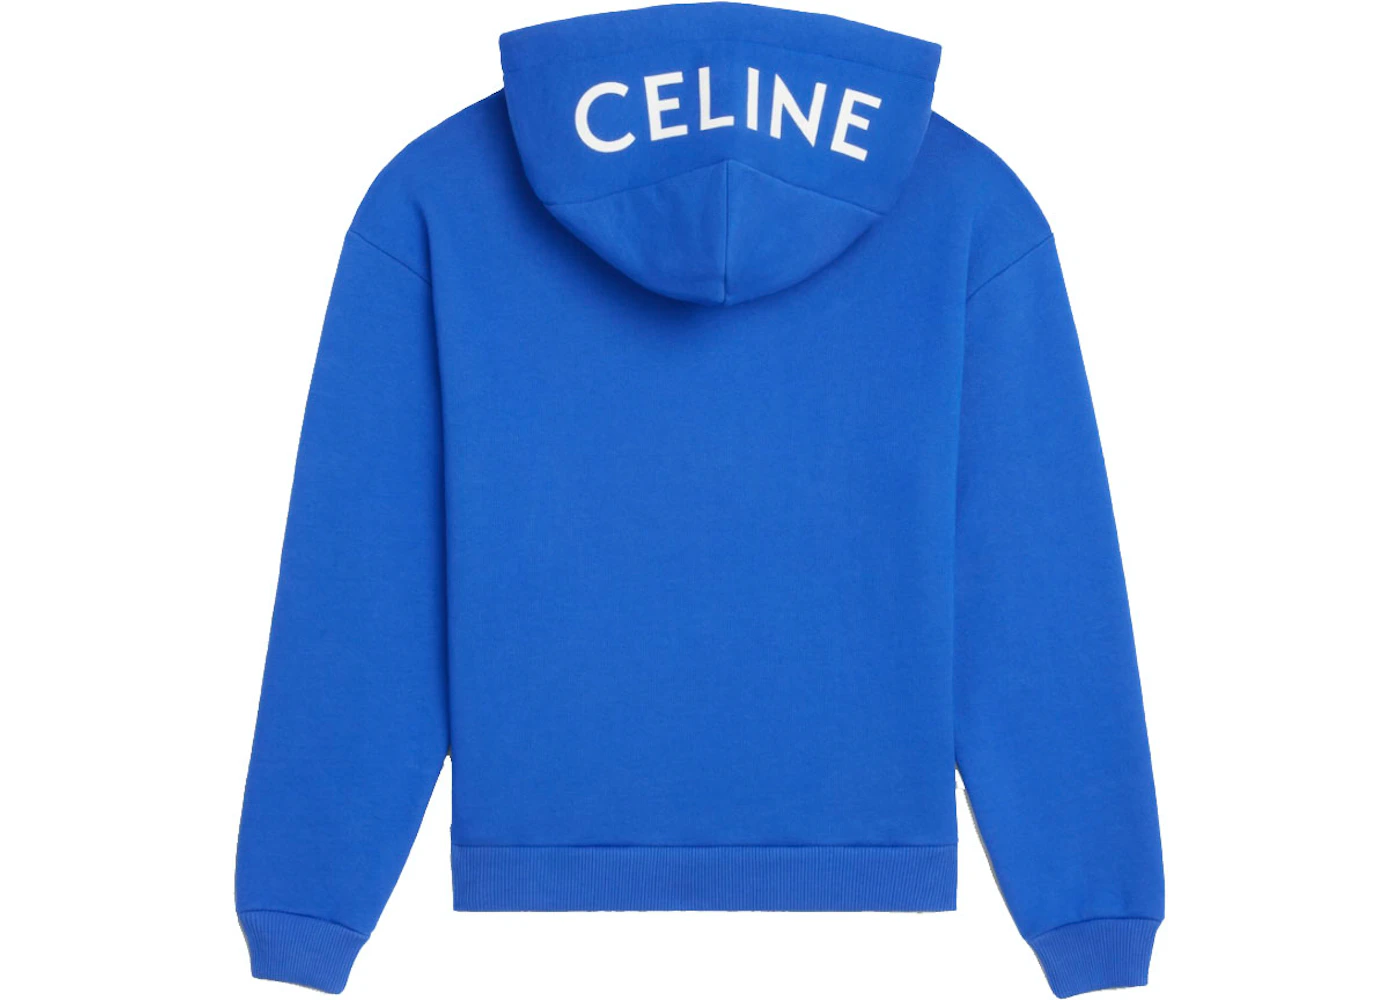 Kip de elite Moeras Celine Loose Sweatshirt In Cotton Fleece Royal Blue/Off White - SS21 - US